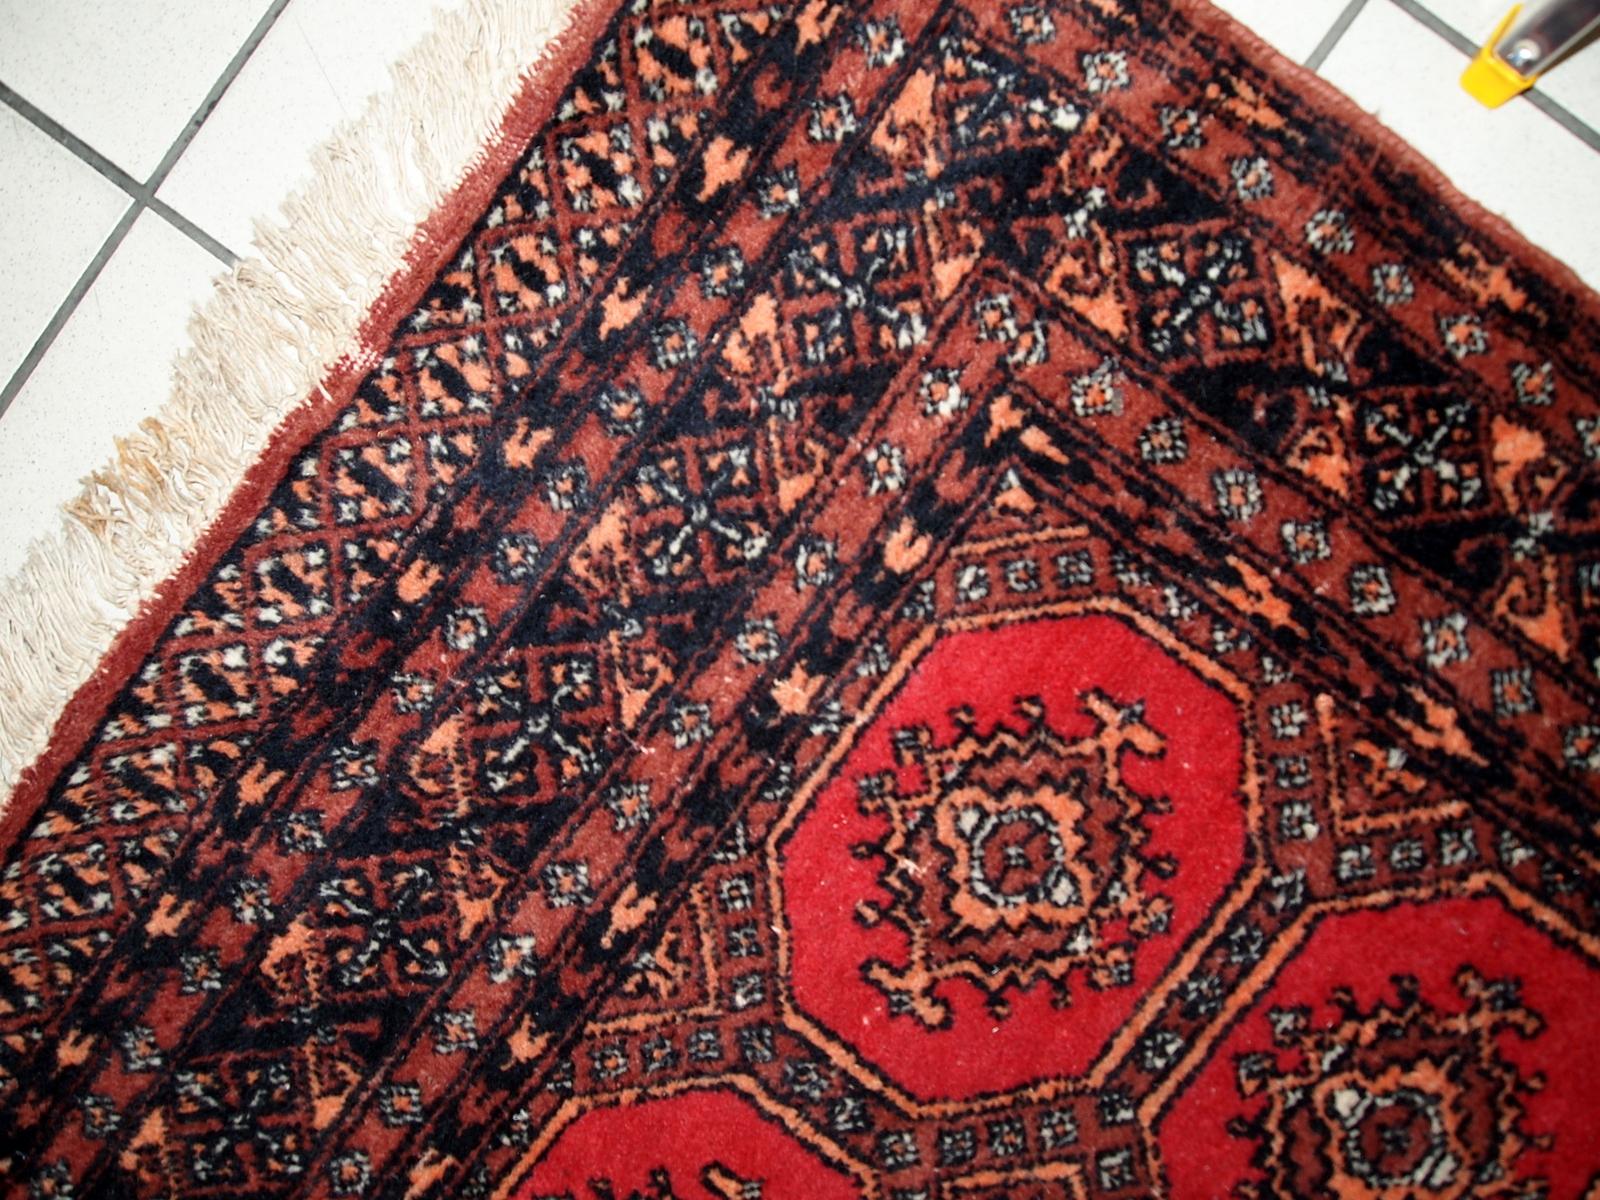 Handgefertigter usbekischer Buchara-Teppich in gutem Originalzustand. Der Teppich aus weicher Wolle aus der Mitte des 20. 

-Zustand: original gut,

-Umgebung: 1960er Jahre,

-Größe: 3,9' x 5,8' (121cm x 177cm),

-MATERIAL: Wolle,

-Herkunftsland: